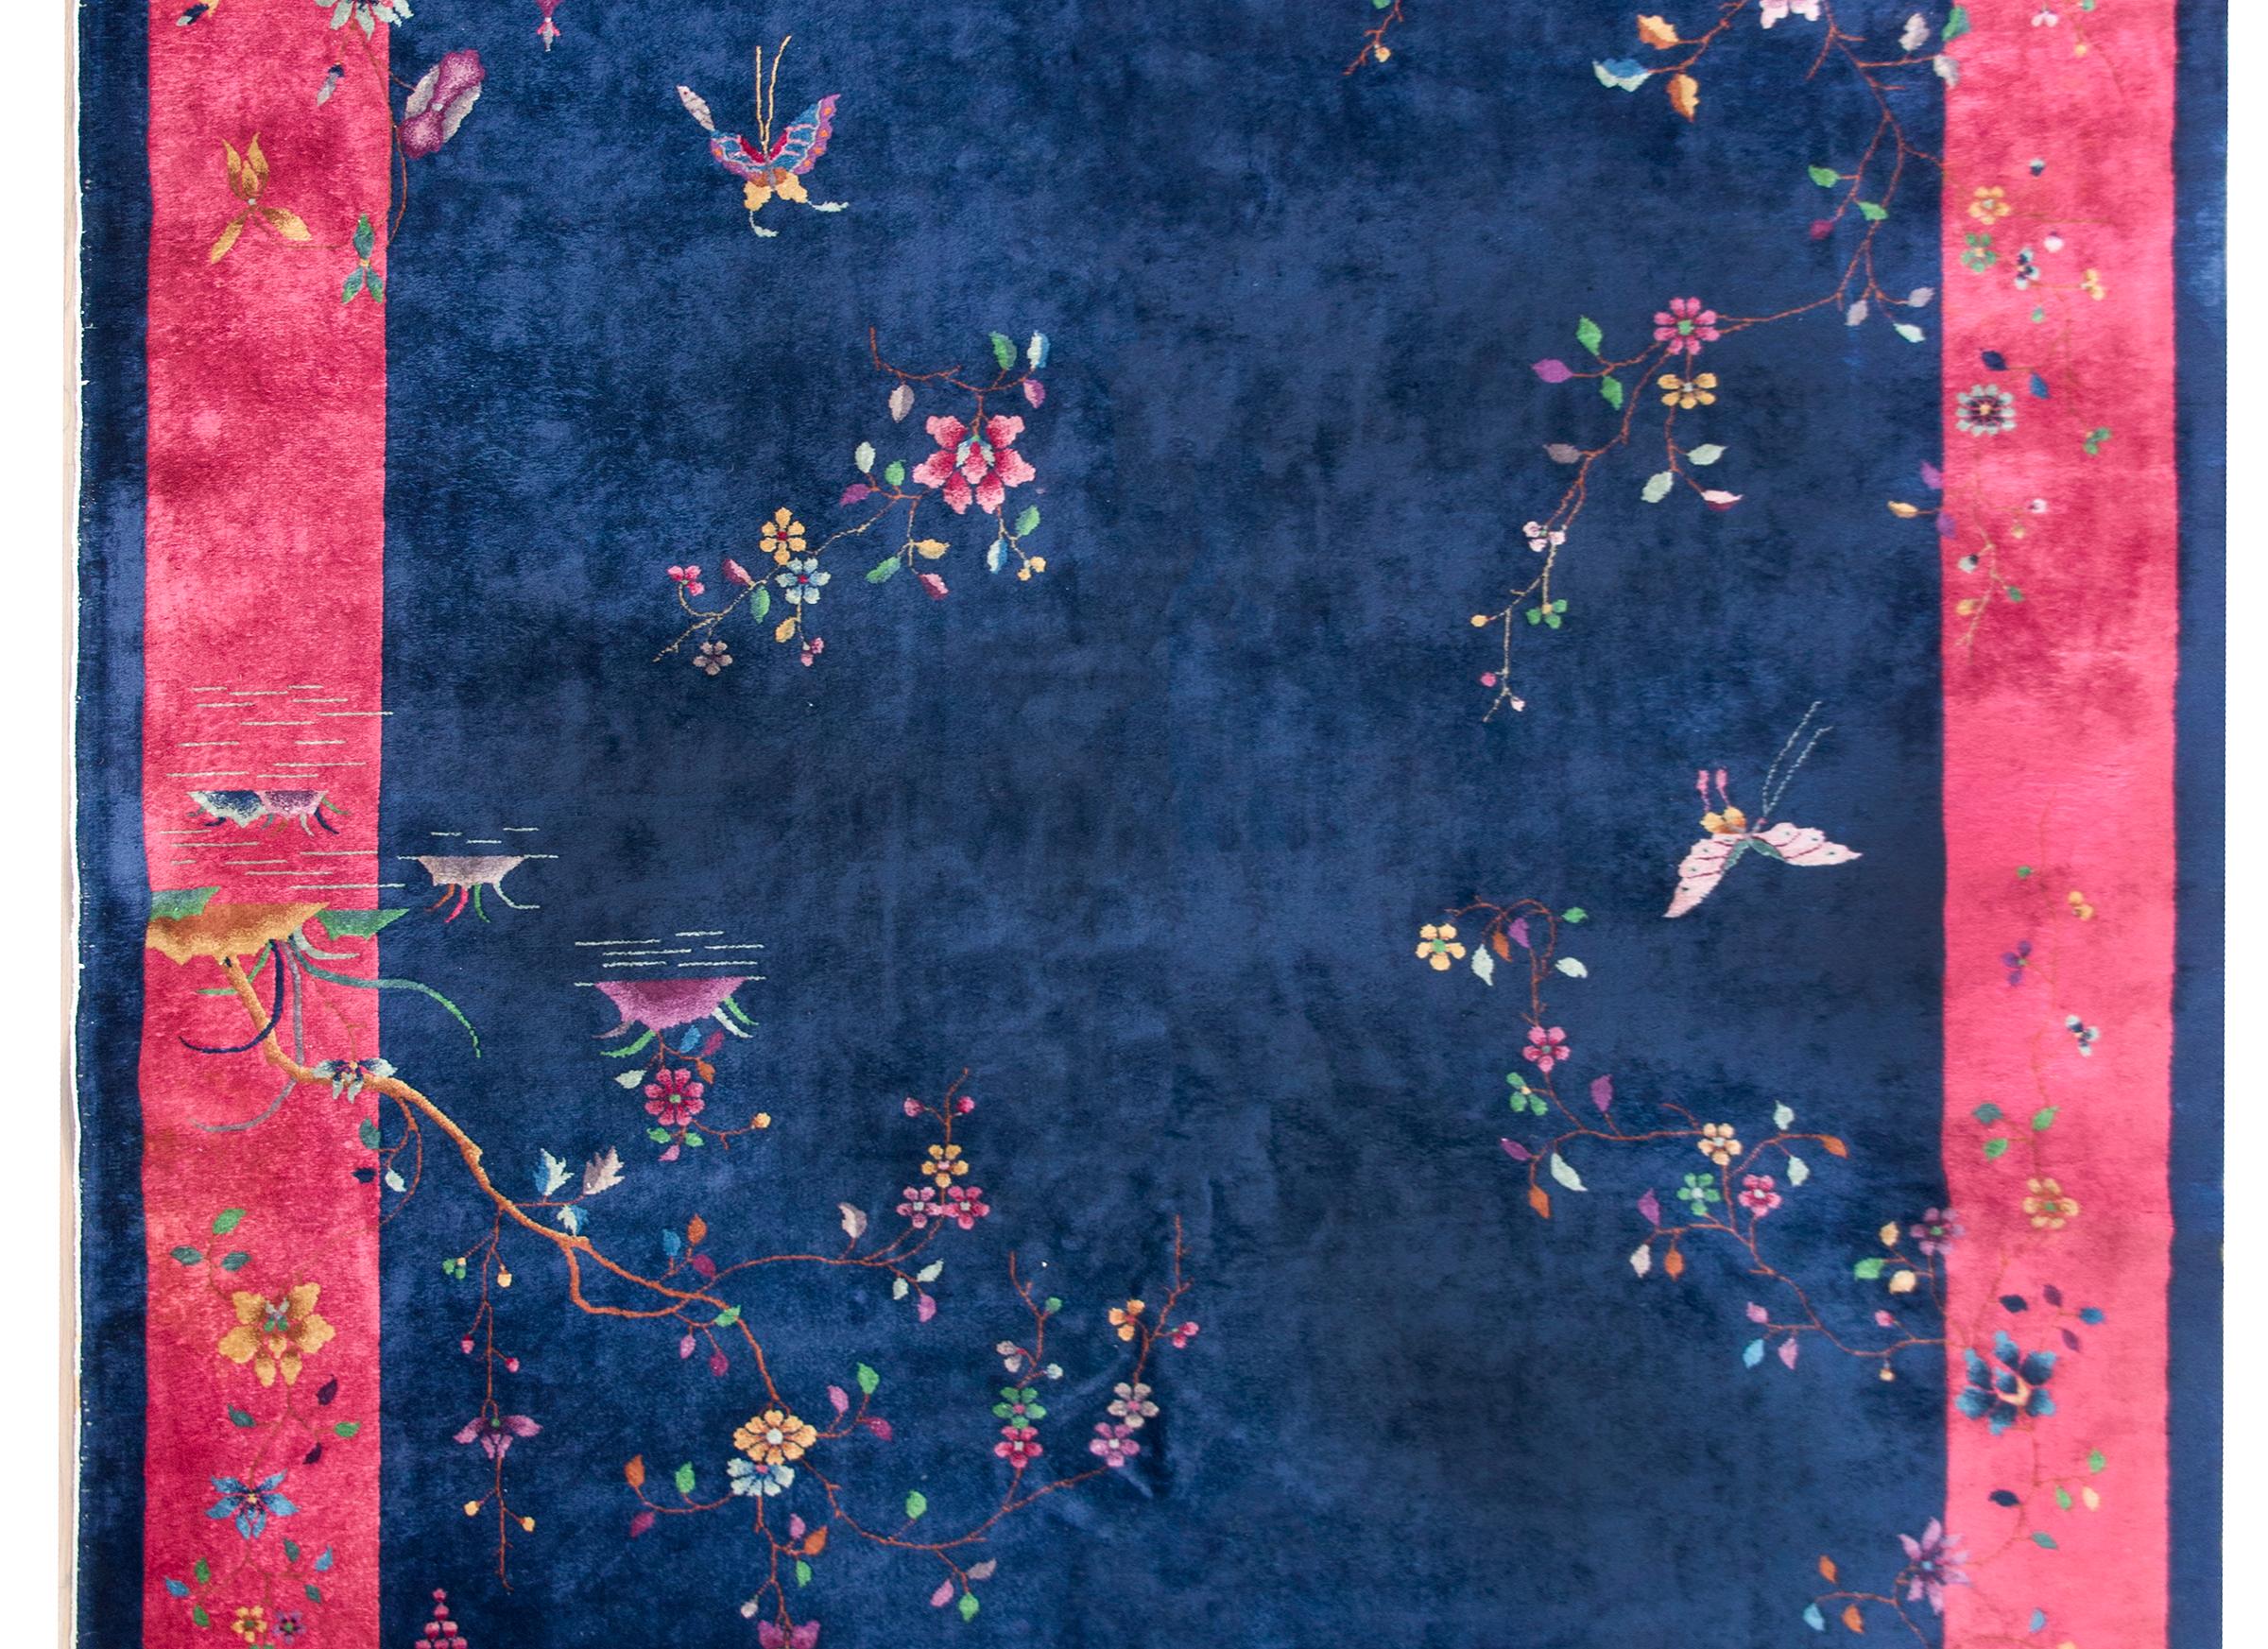 Magnifique tapis chinois Art déco du début du 20e siècle, avec un fond indigo foncé entouré d'une large bordure fuchsia, et recouvert de fleurs de prunus et de pivoines, de papillons et d'une pagode de jardin dans le coin inférieur droit.